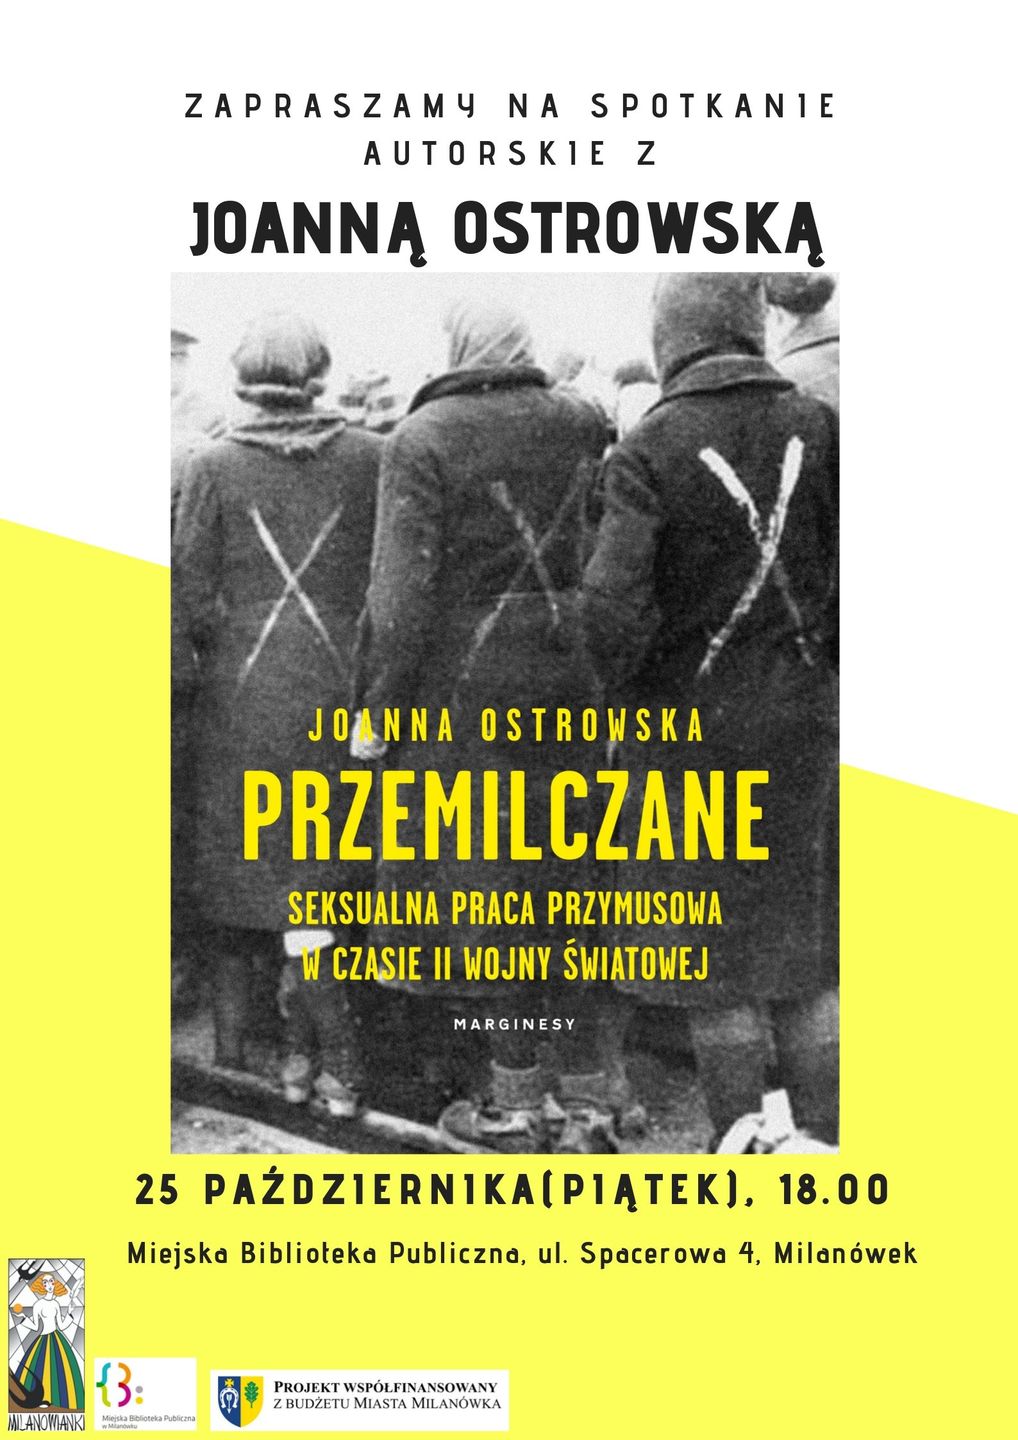 Plakat promujący spotkanie autorskie z Joanną Ostrowską